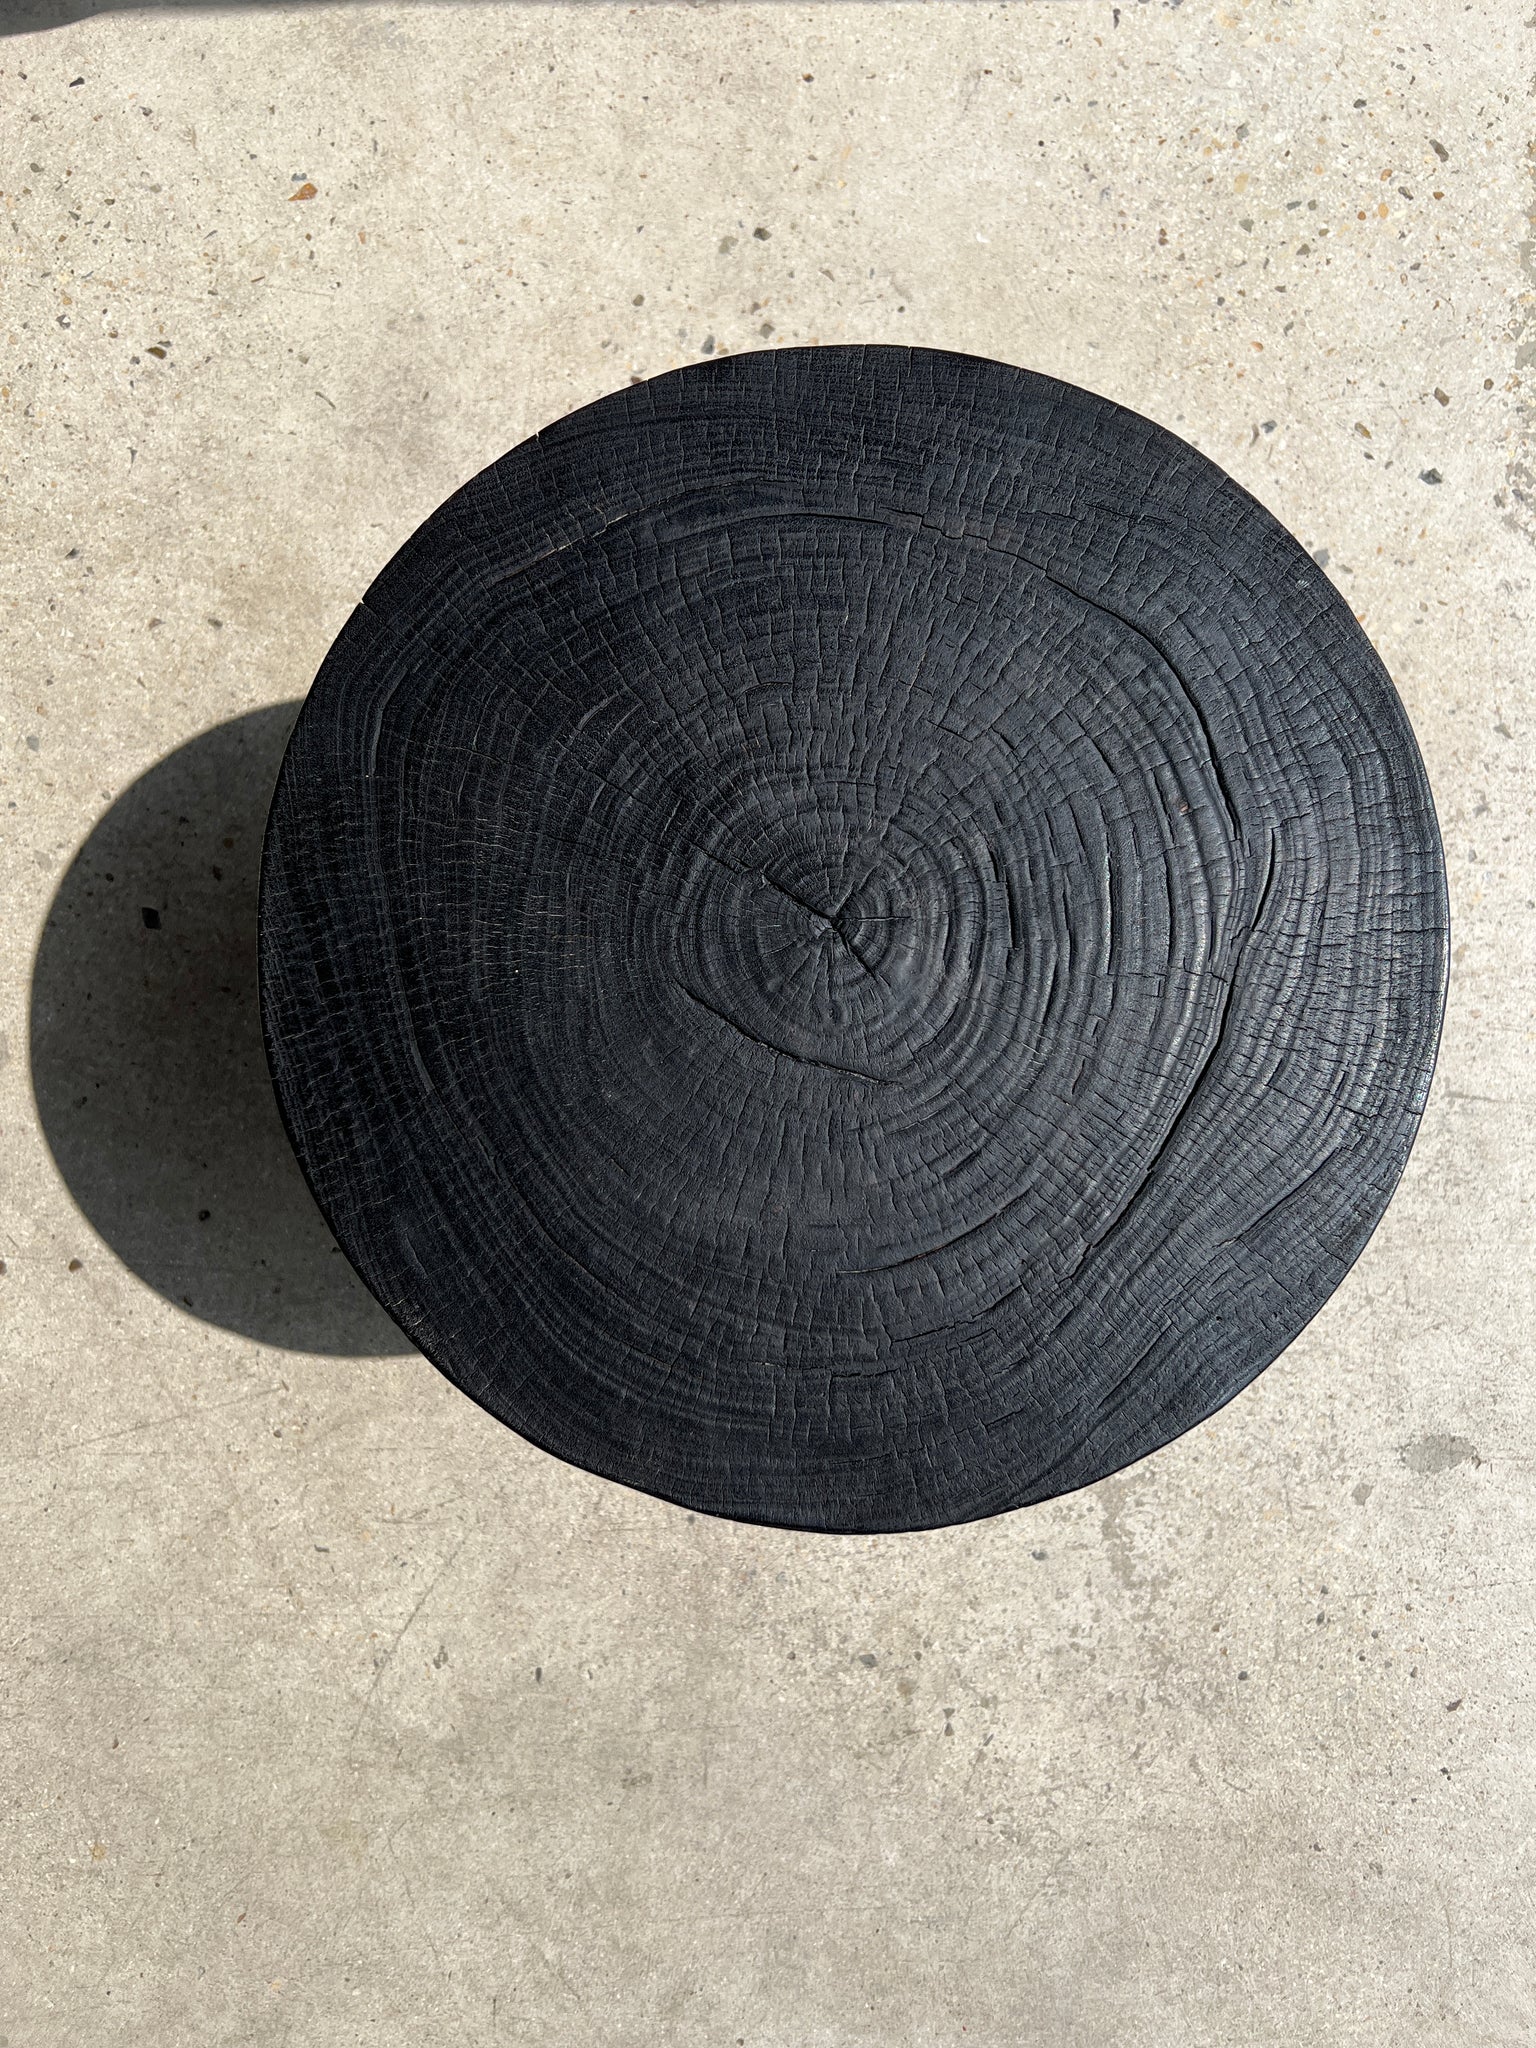 Bout de canapé monoxyle en manguier noir tripode plateau demi sphère H:45 D:44